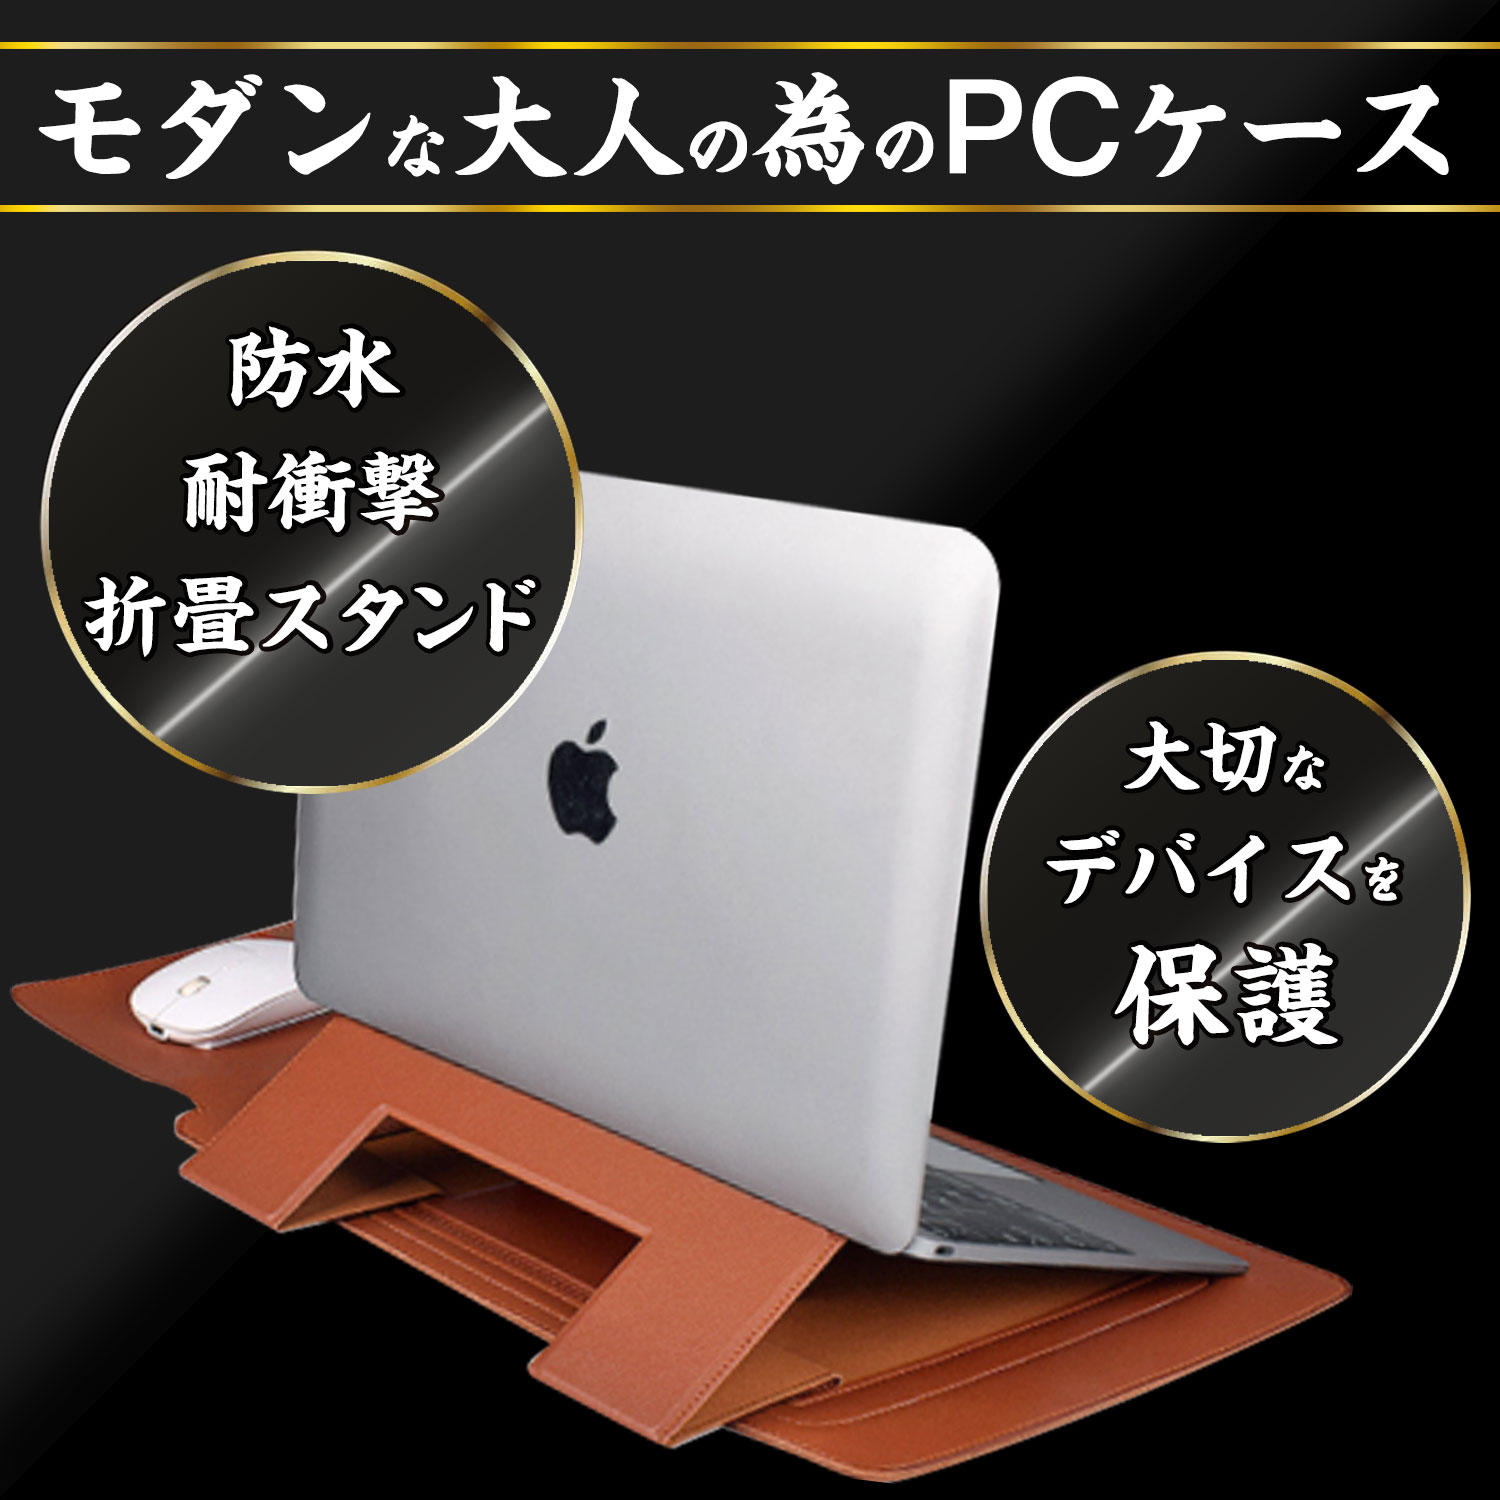  MacBook Pro 13 ケース MacBook Air 13 ケース パソコンケース 13インチ PCケース PCカバー スリーブ インナーバッグ マウスパッド機能